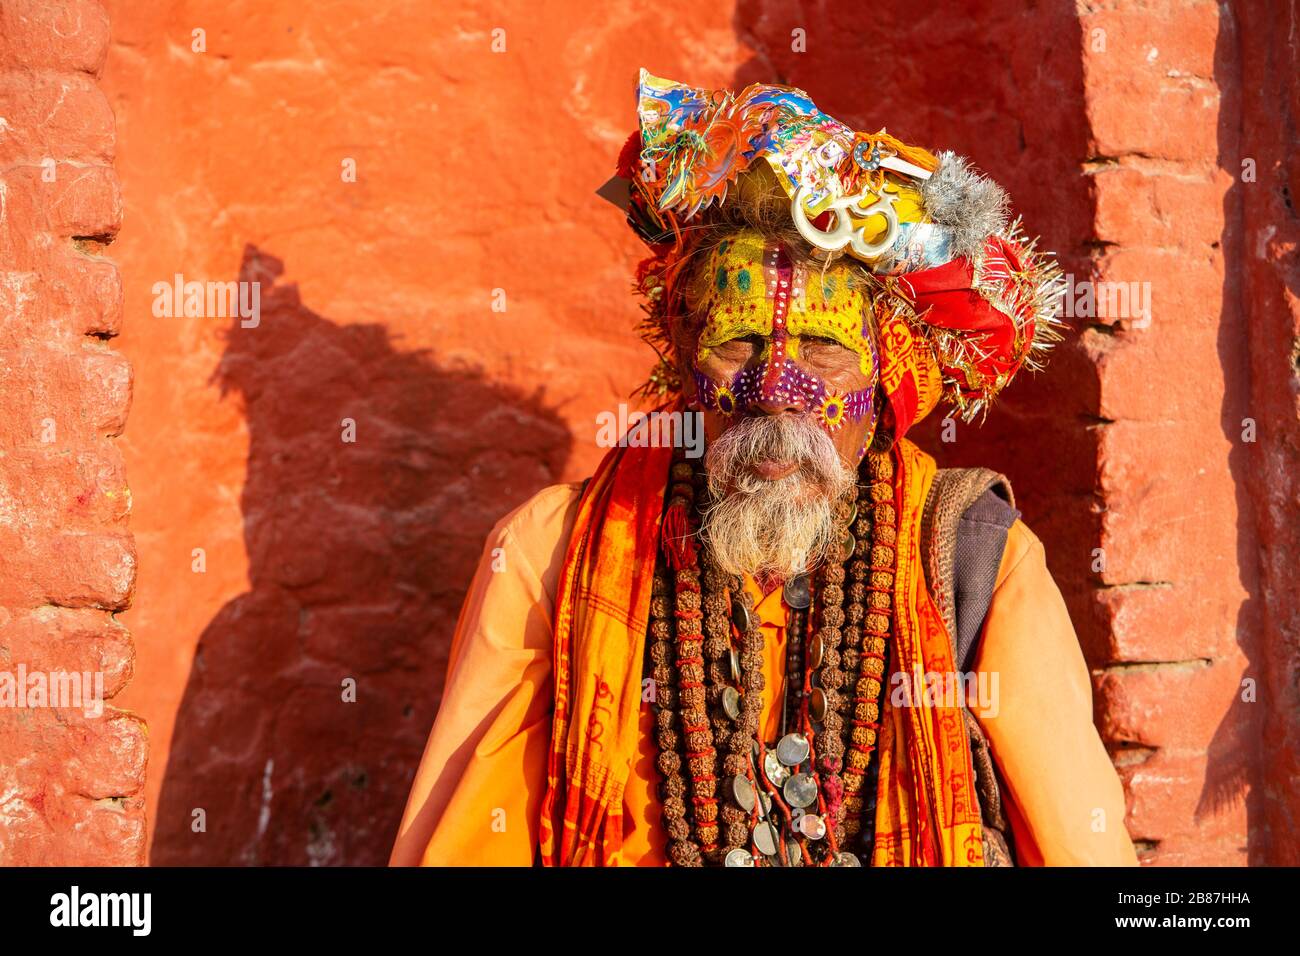 Sadu portrait at Pashupatinath in Kathmandu, Nepal Stock Photo